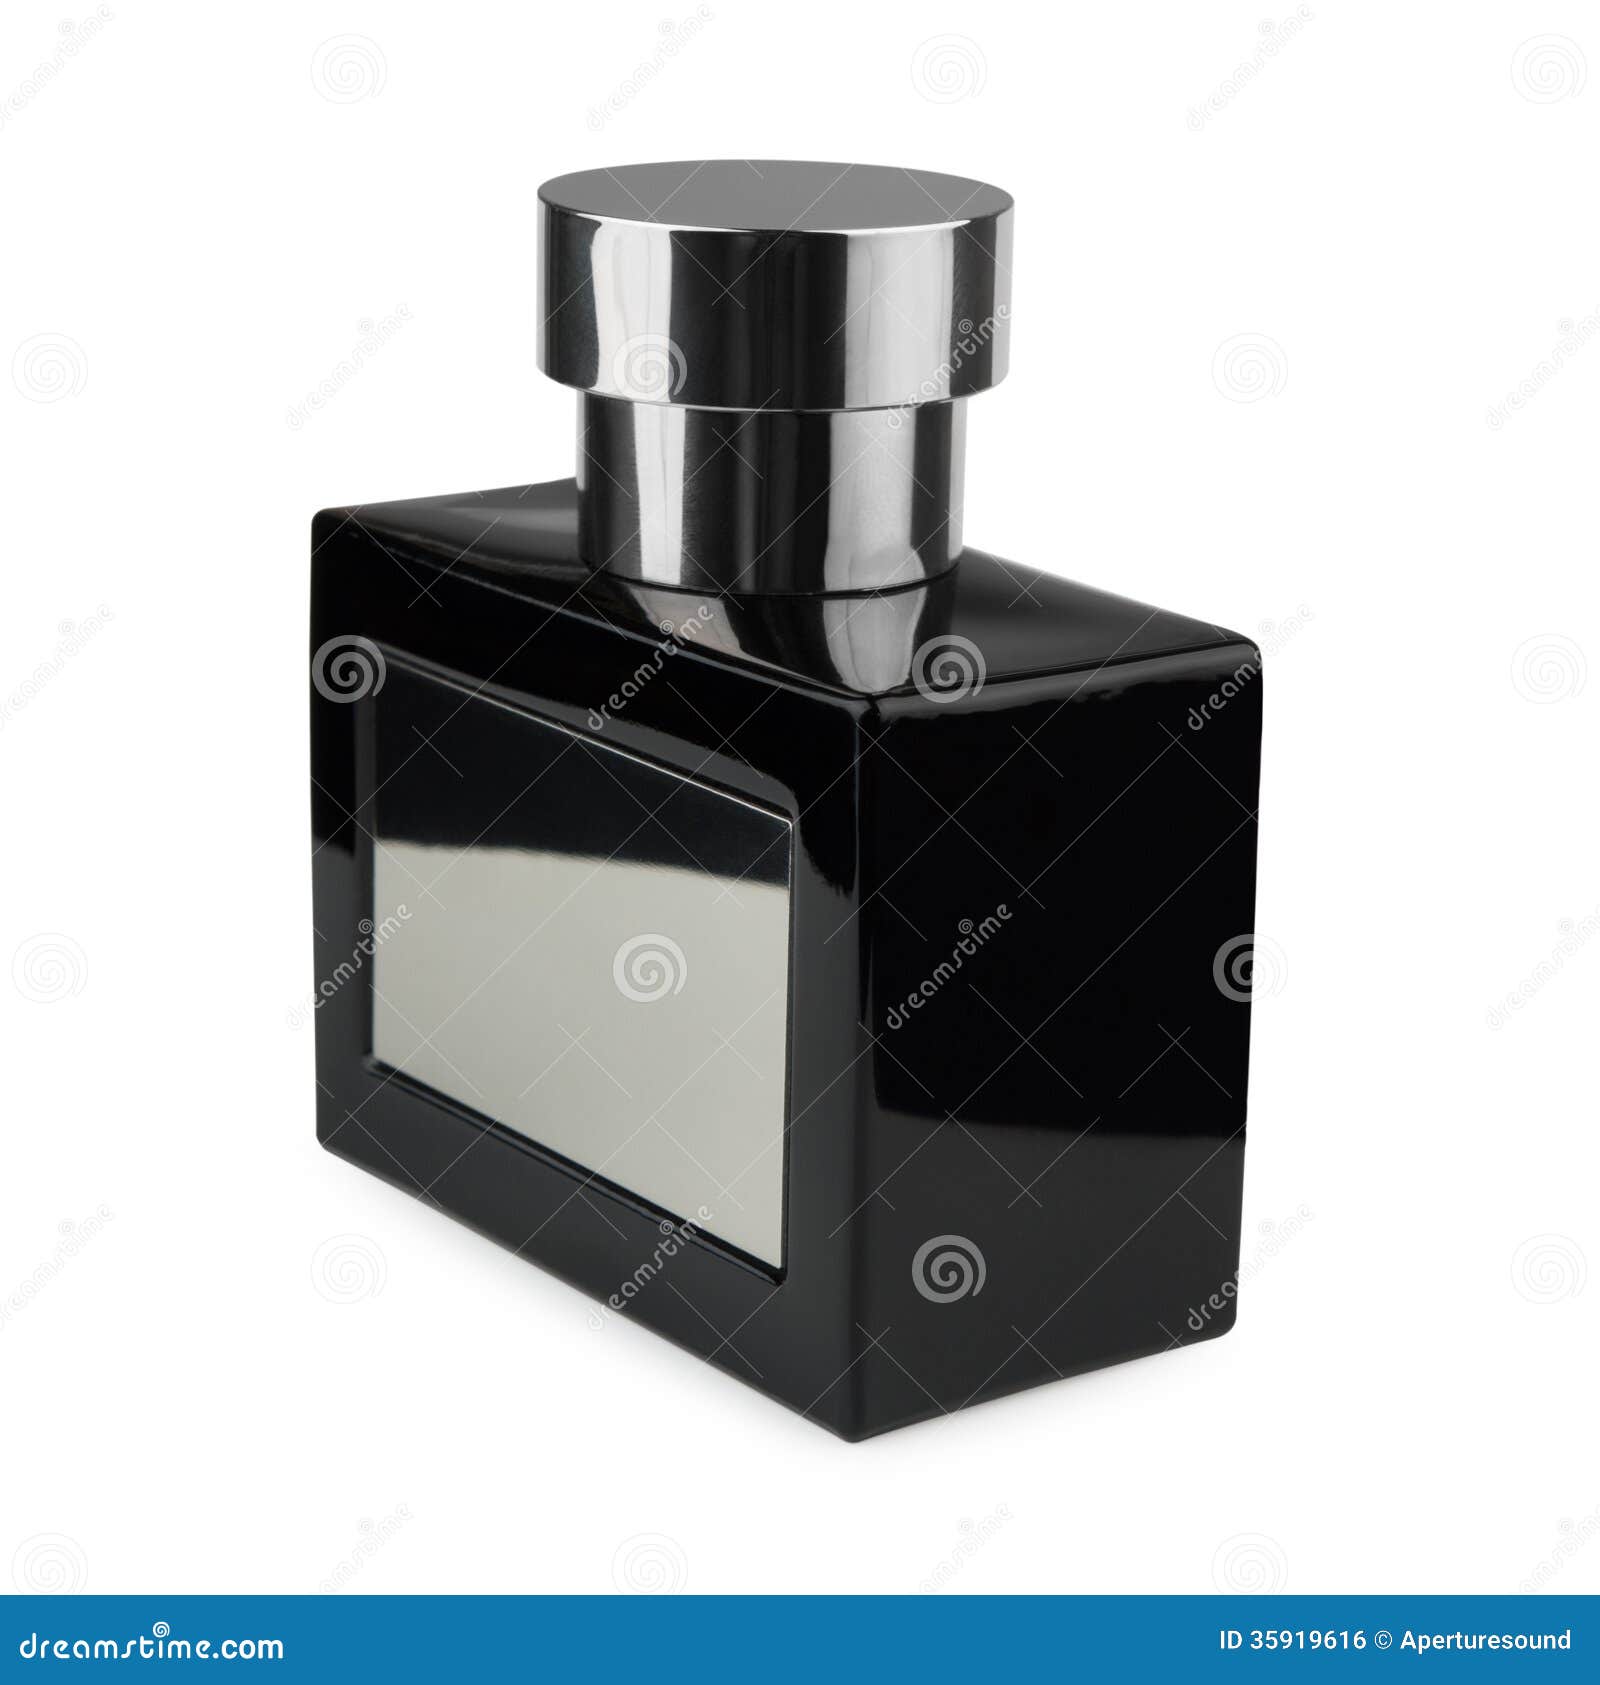 Close-up Photo of Black Perfume Bottle · Free Stock Photo